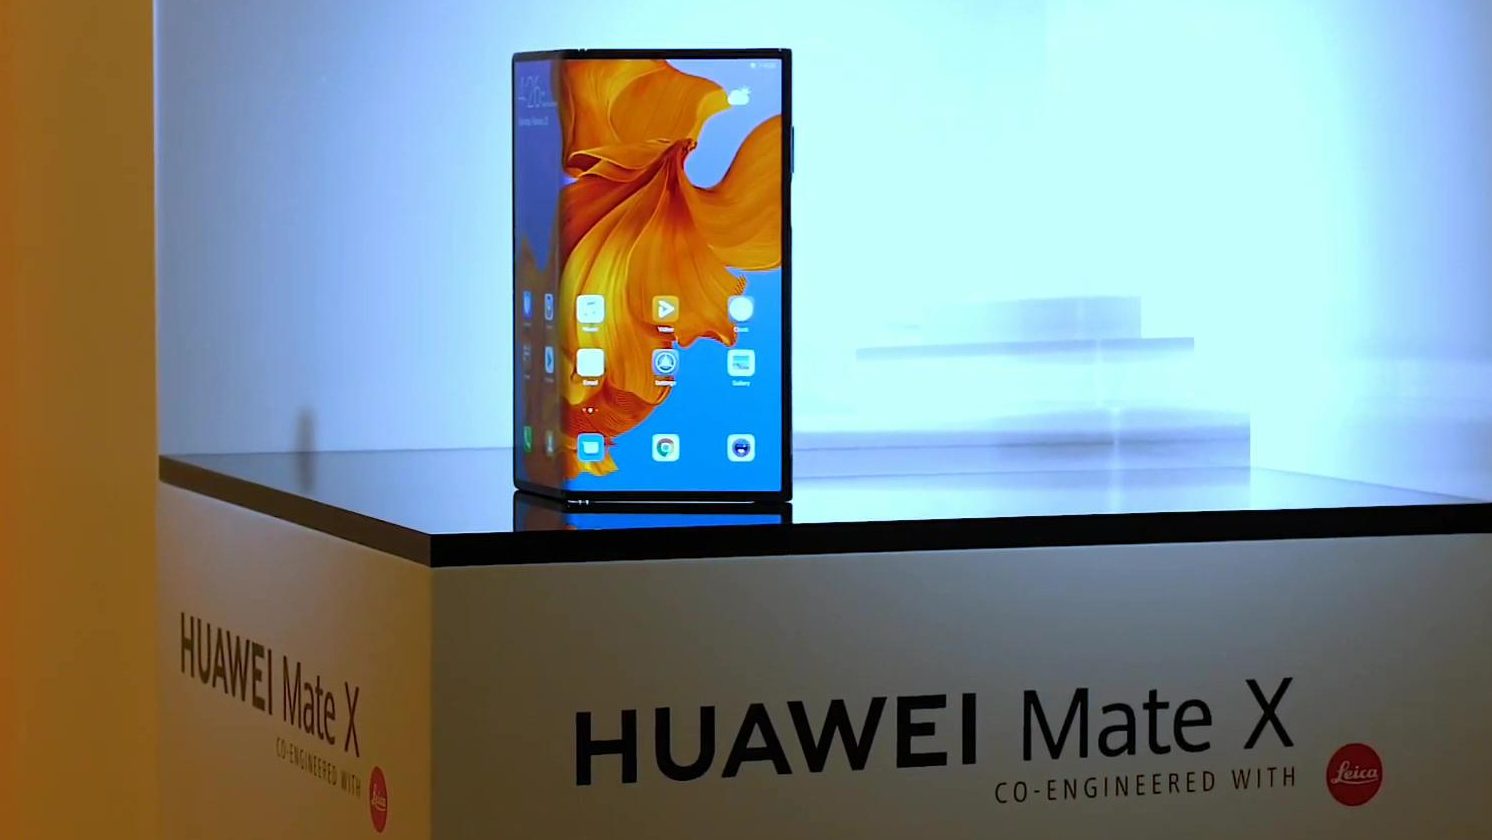  Huawei Mate X sartu da!  Hona hemen ezaugarriak eta prezioa
